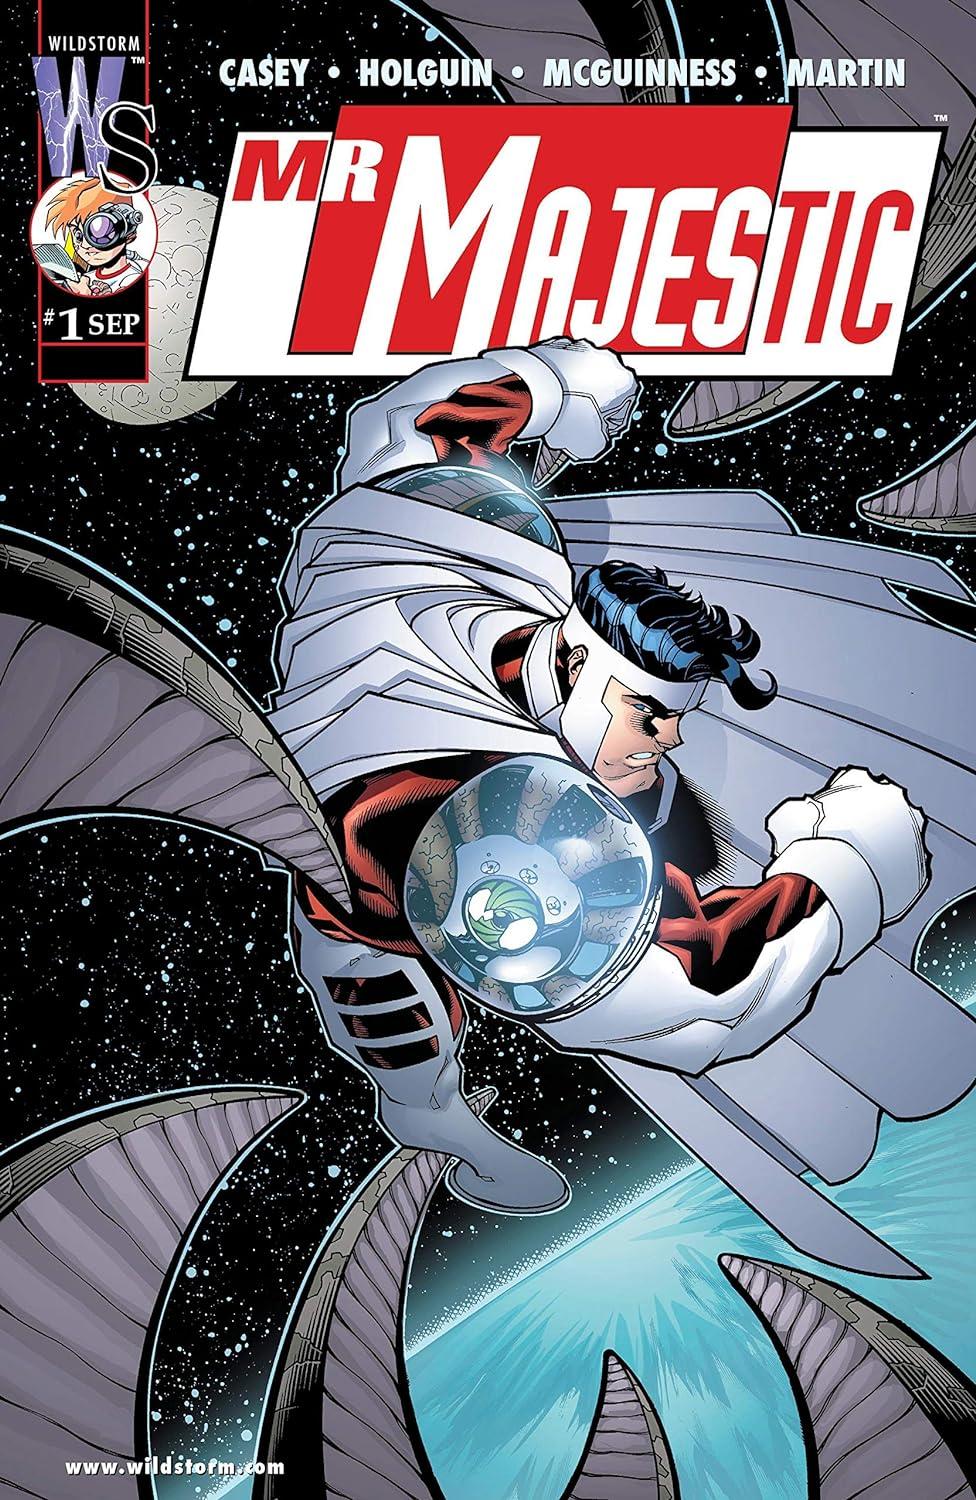 MR MAJESTIC #1 - DC COMICS (1999)